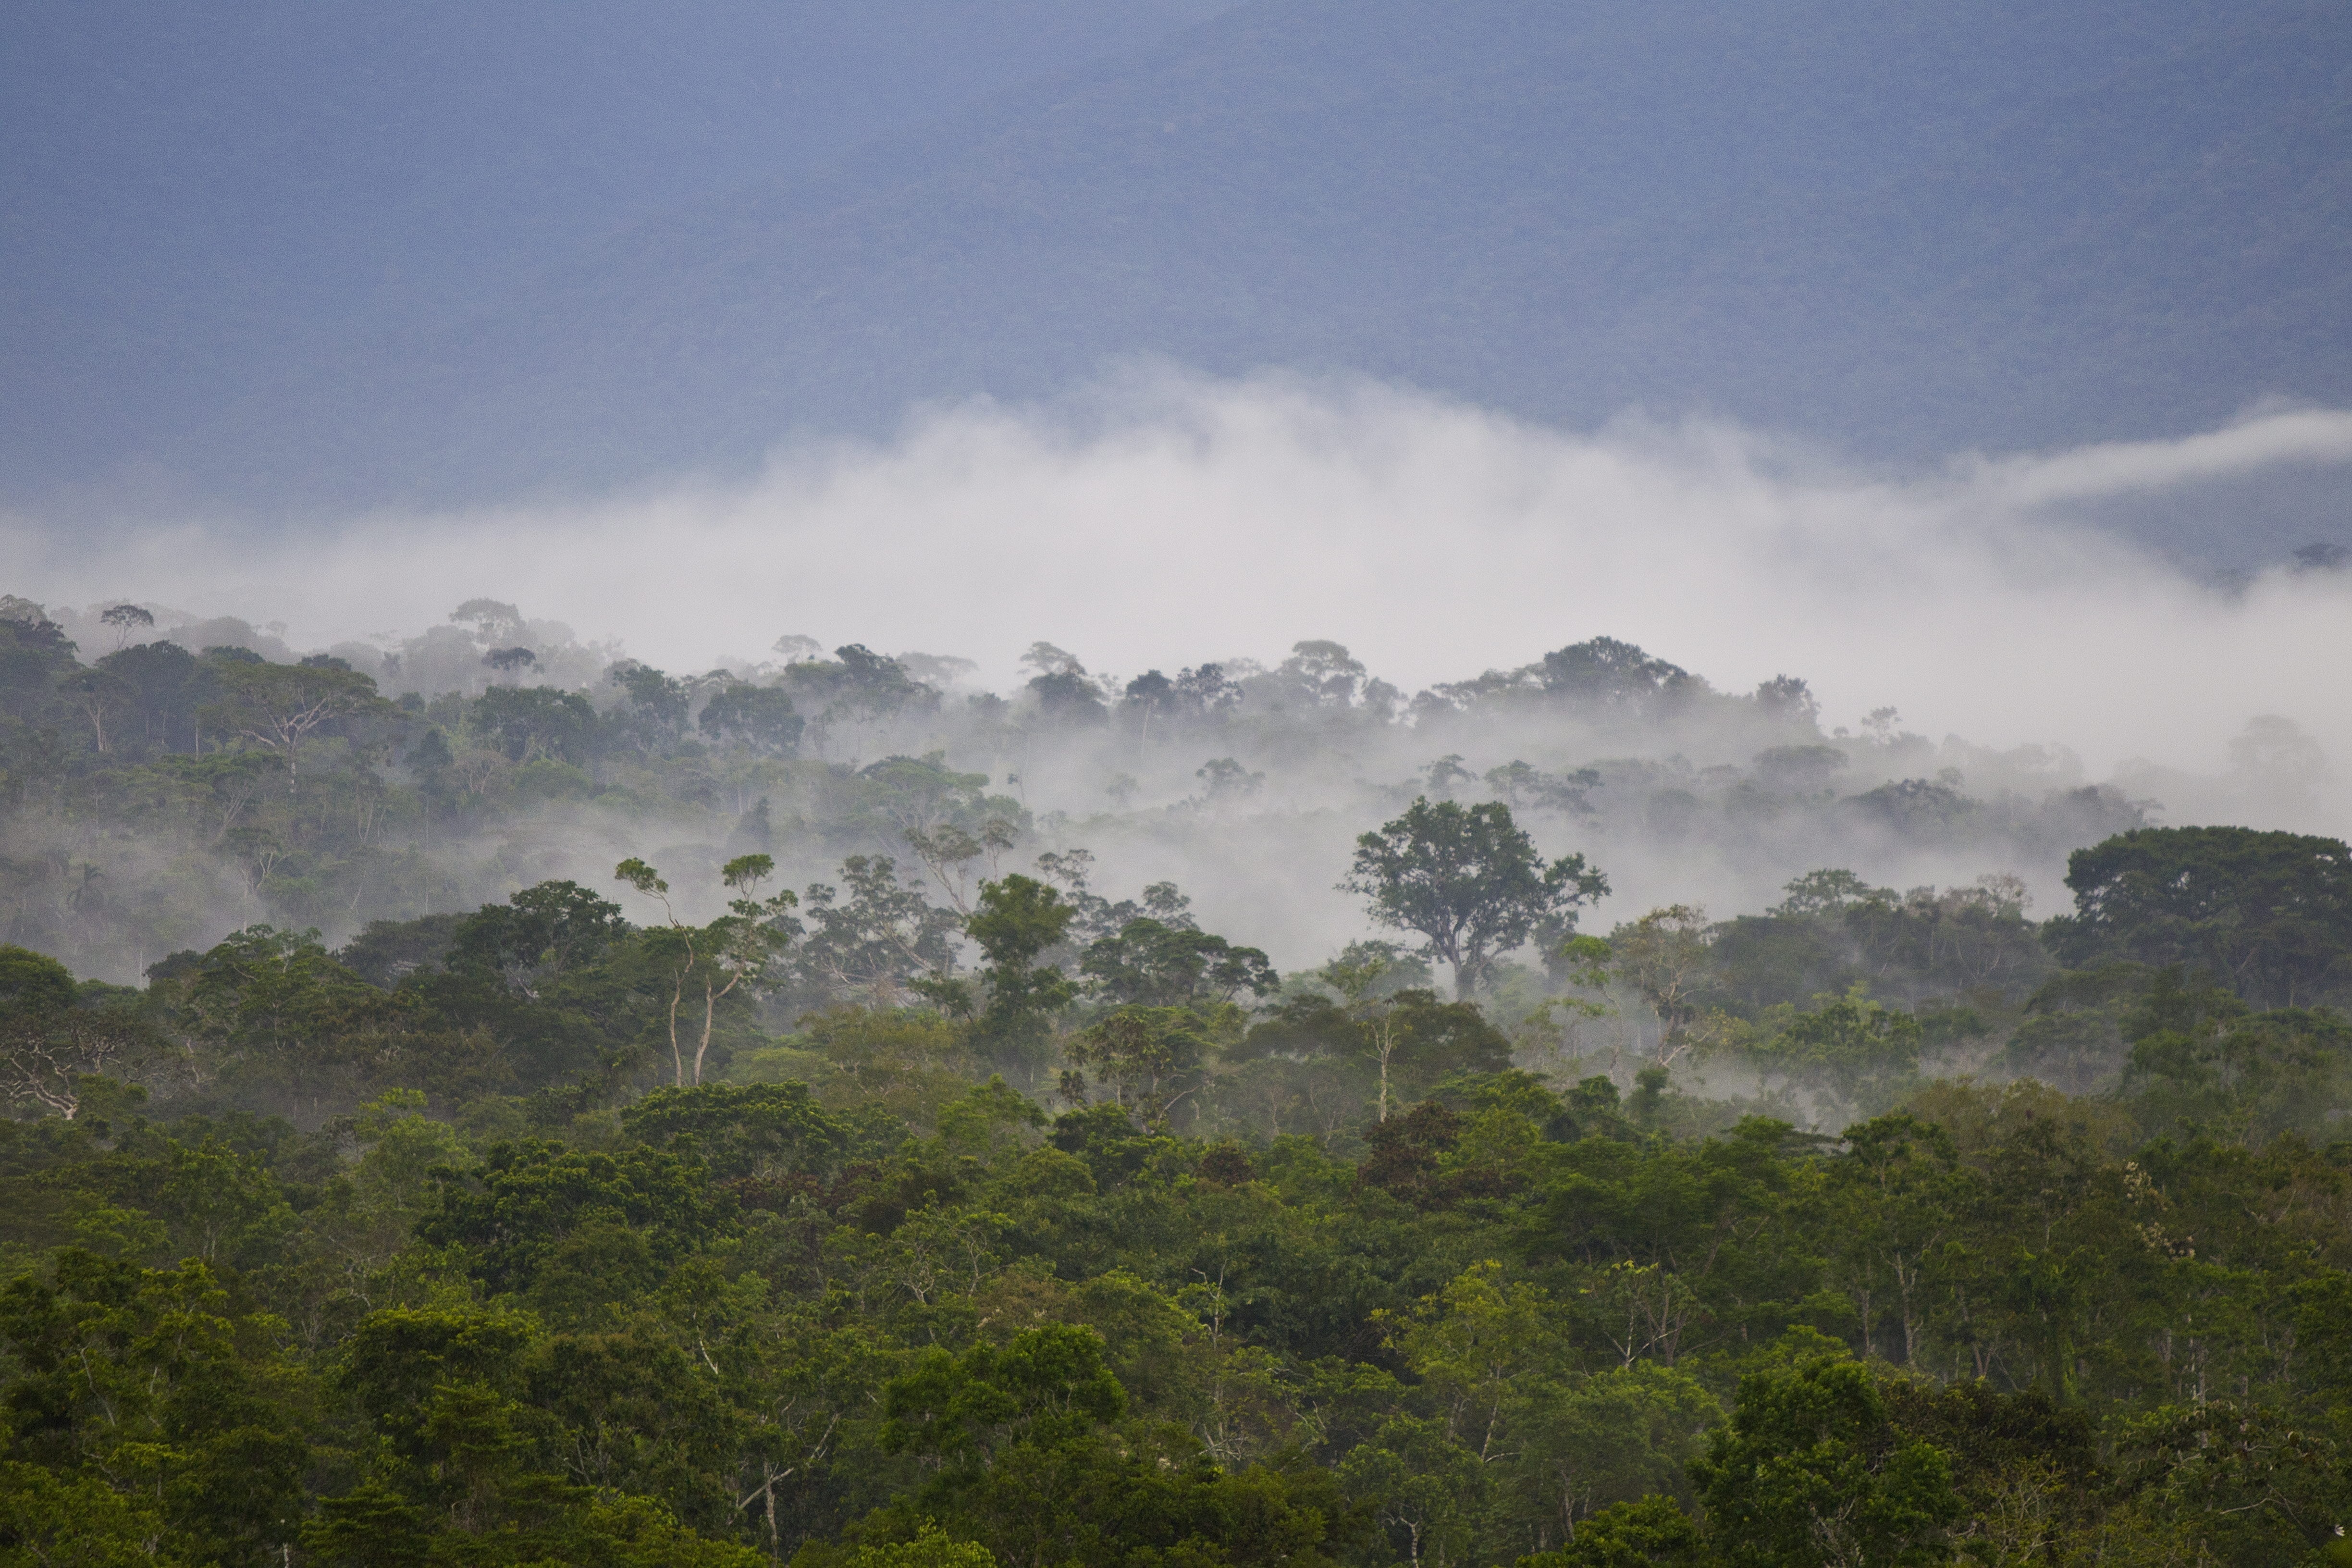 El gobierno de Ecuador anunció que financiará proyectos para proteger los bosques amazónicos donde viven indígenas por USD 2,5 millones